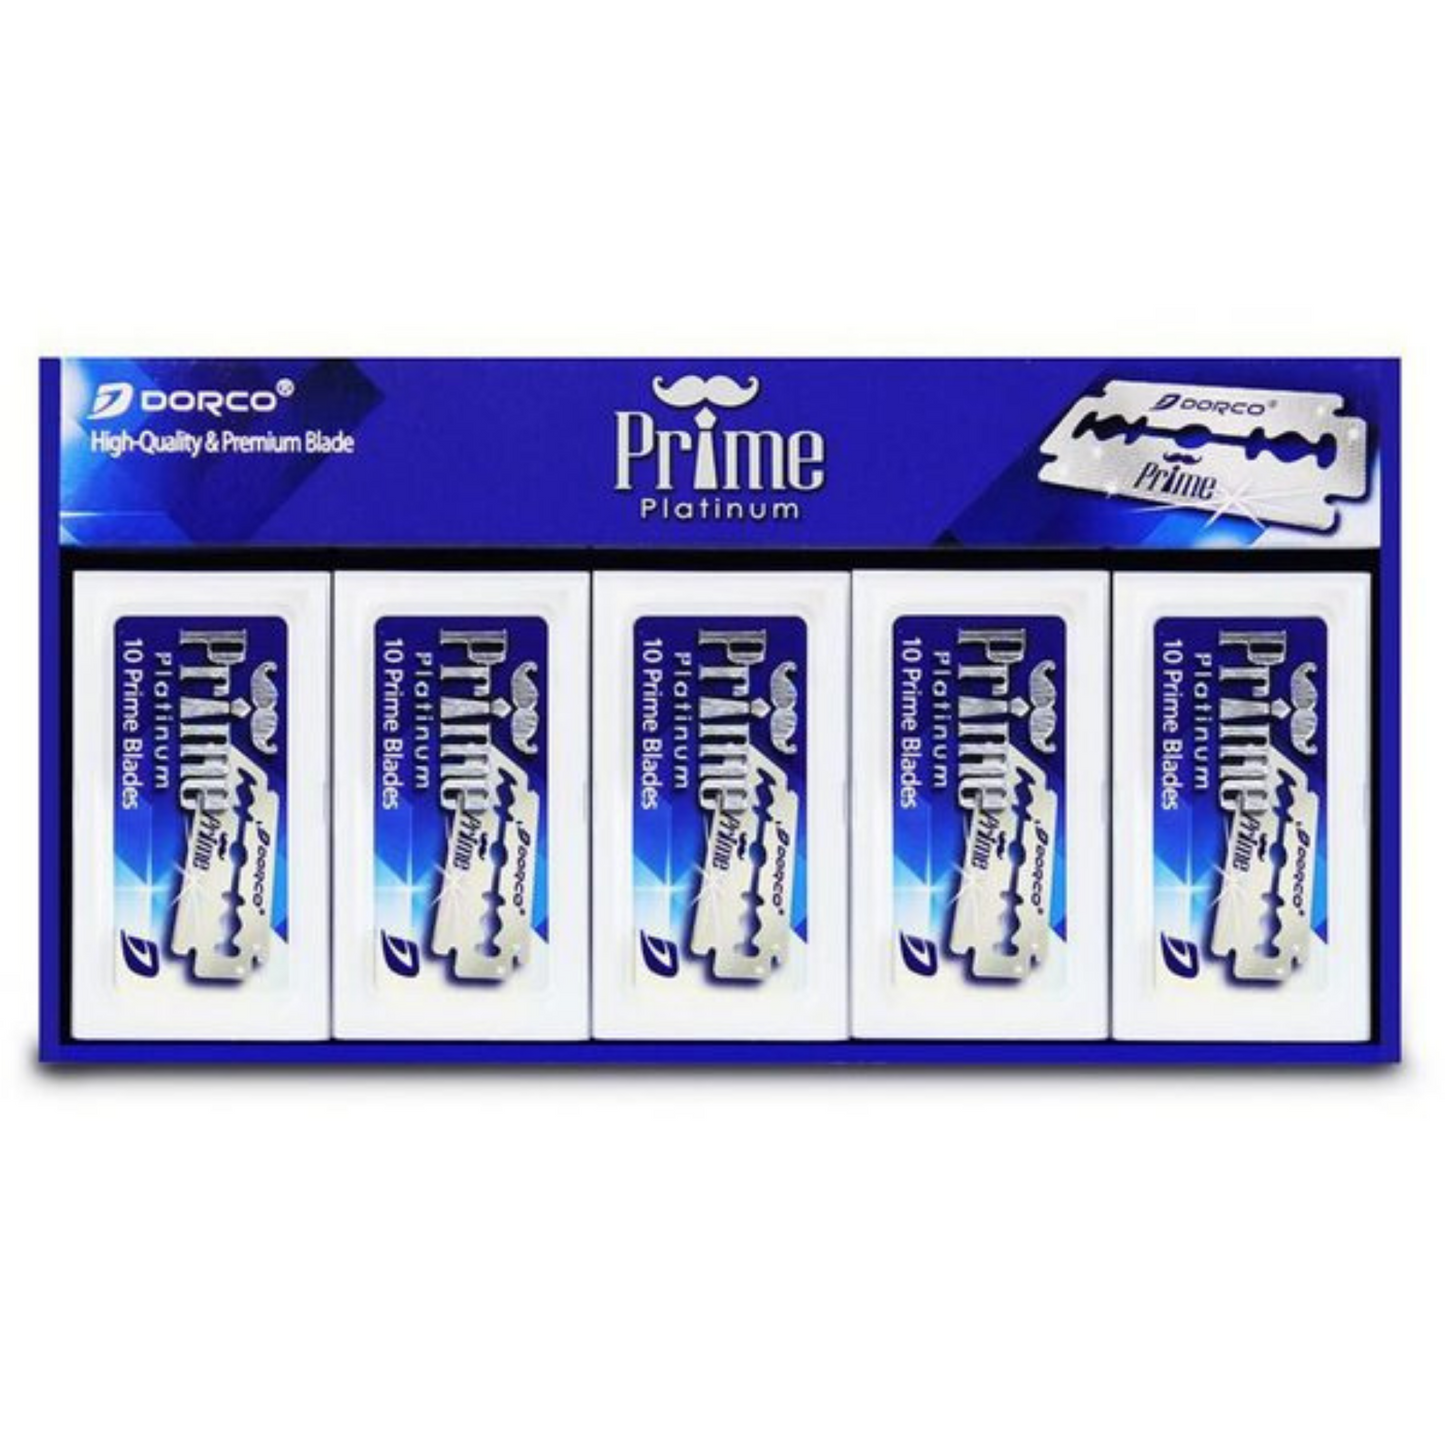 Primary Image of Dorco Prime Platinum Blades